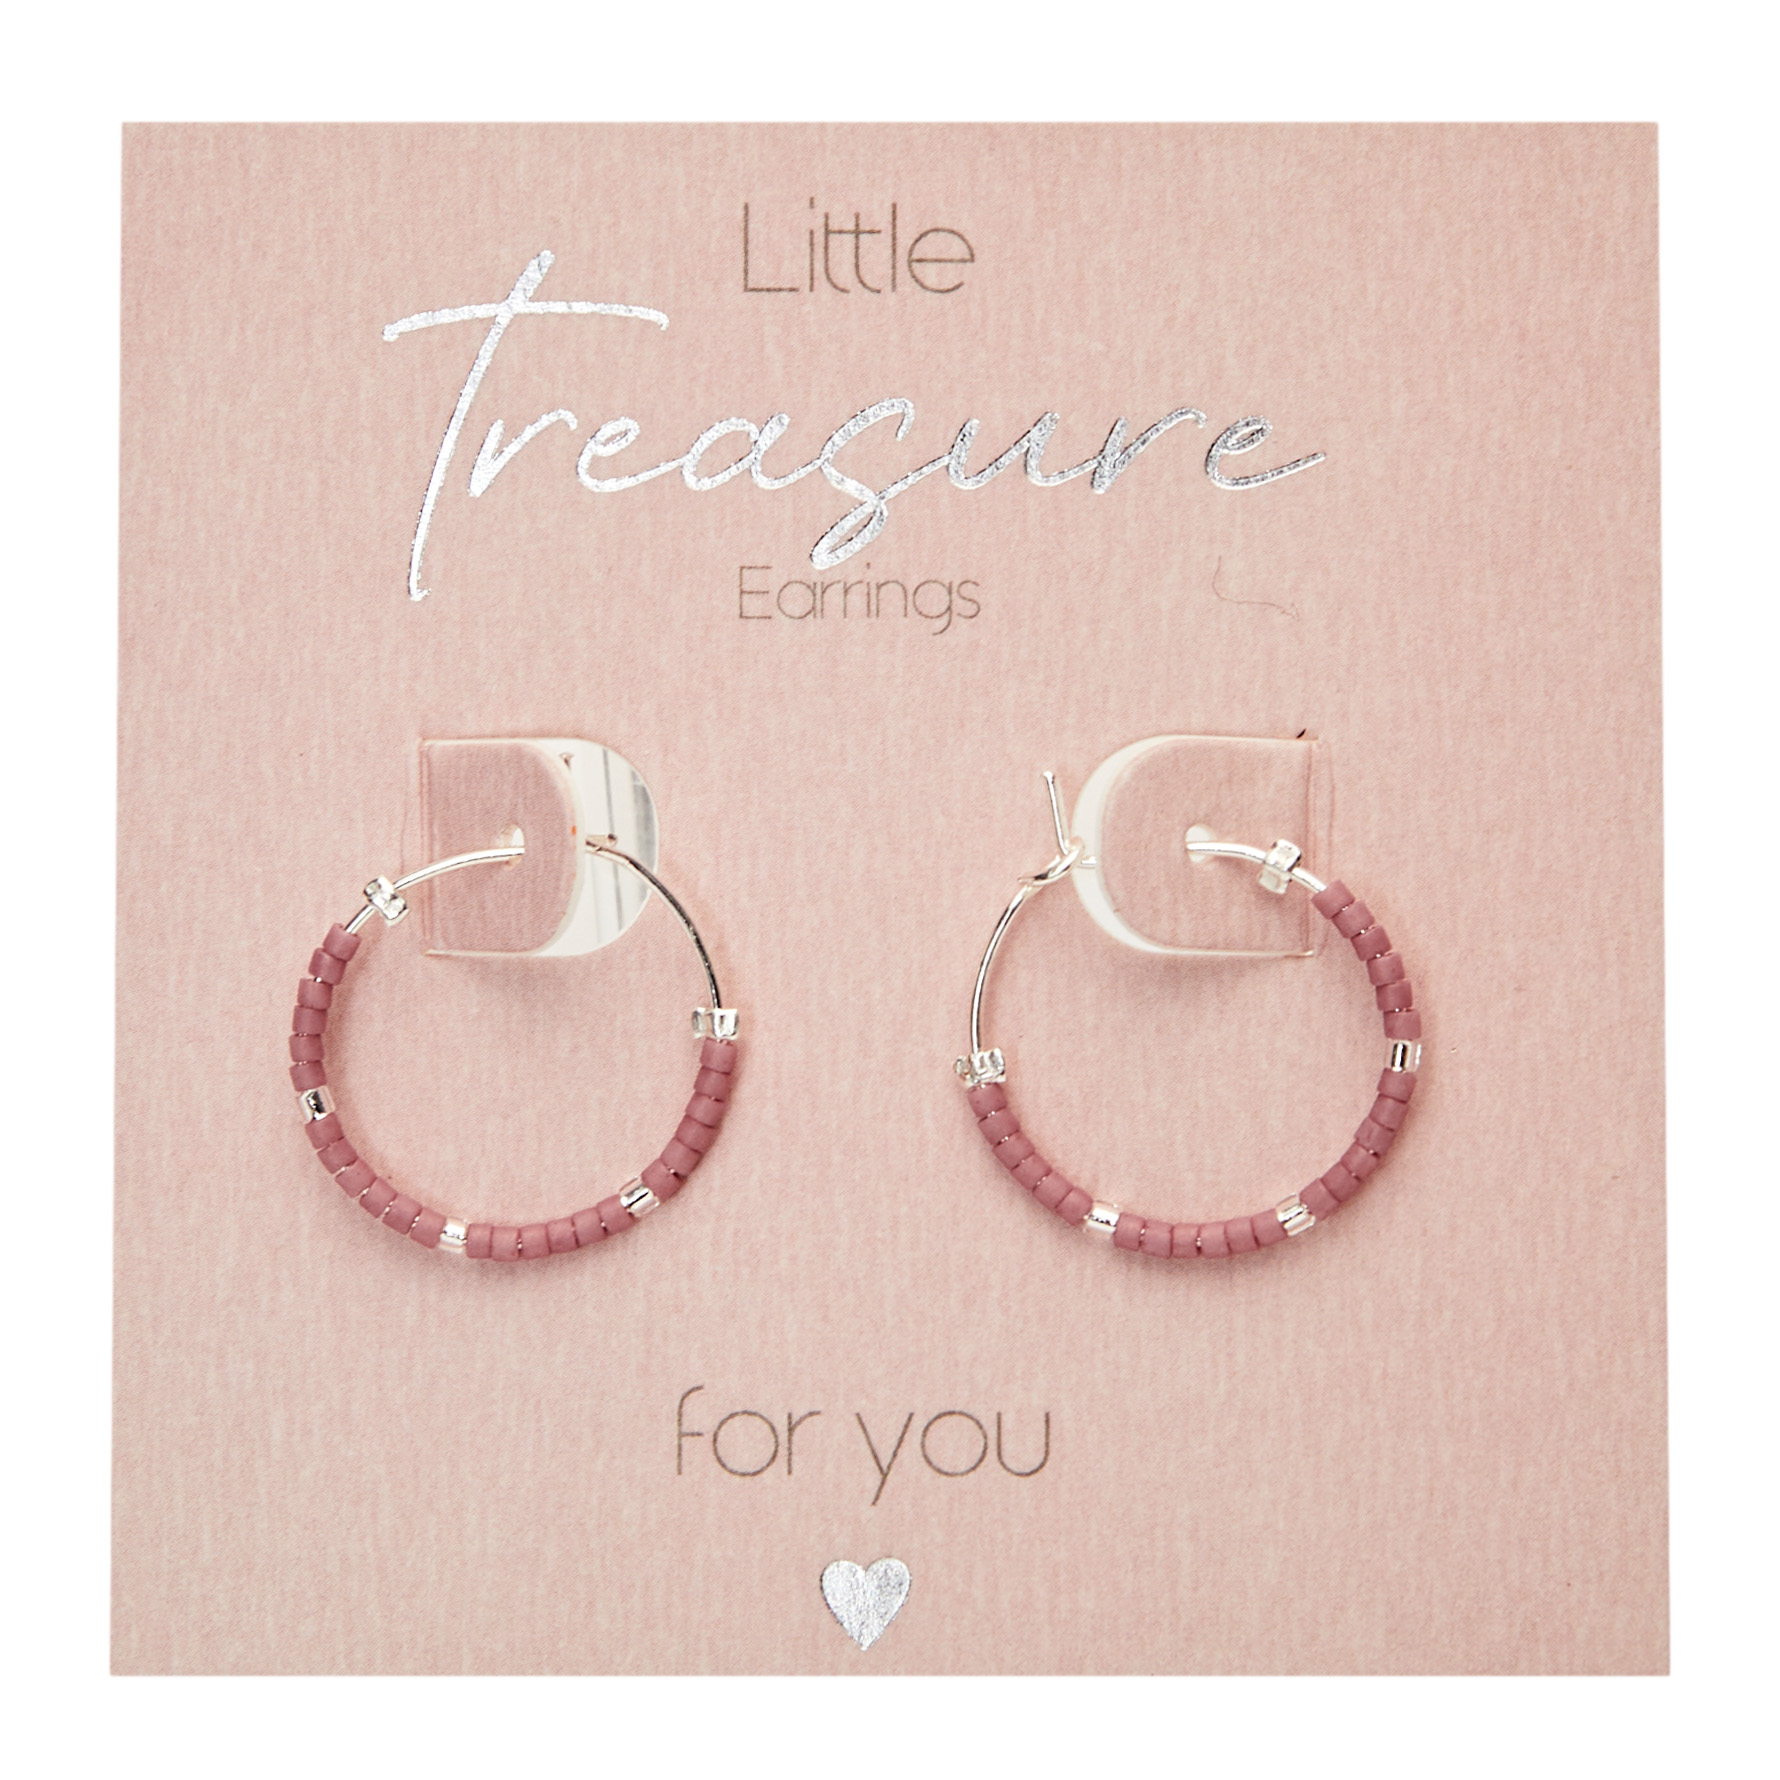 Display earrings "Little Treasure"